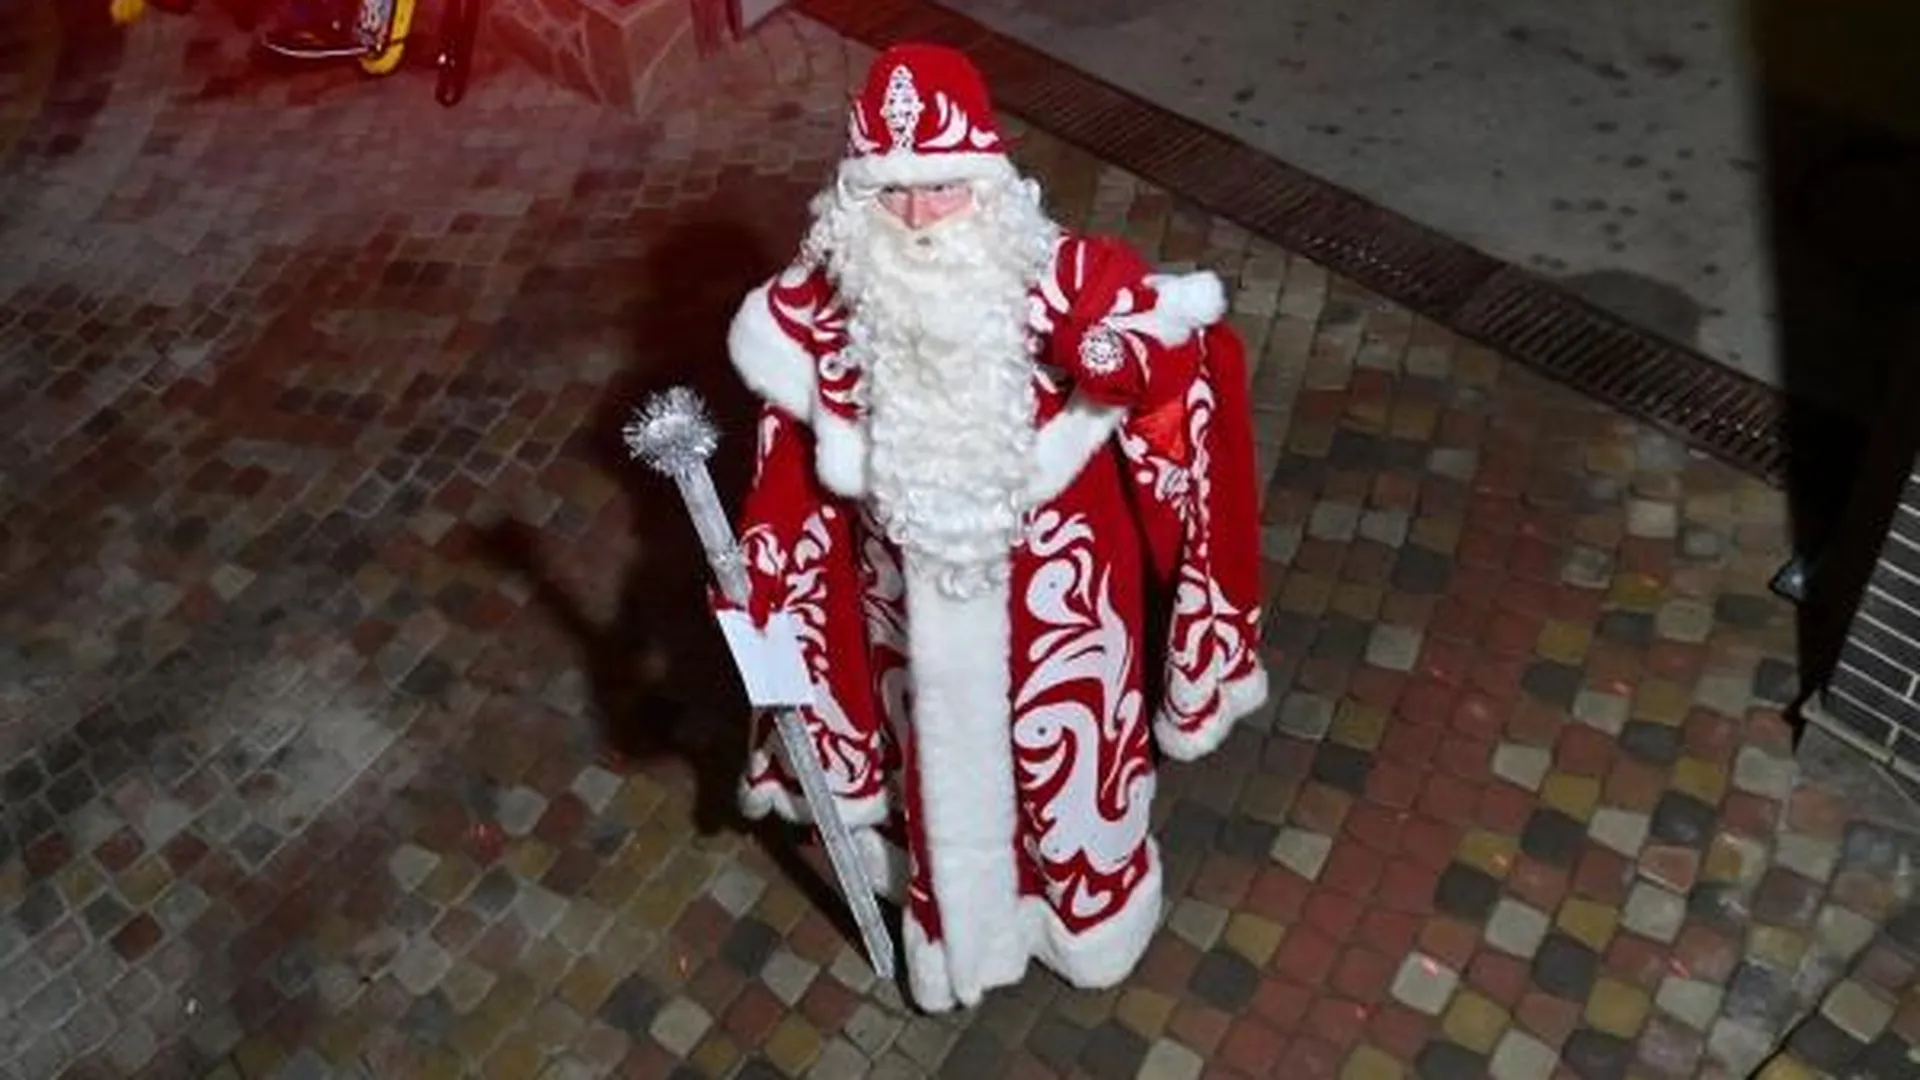 Пакет Деда Мороза в центре столицы сильно напугал жителей дома